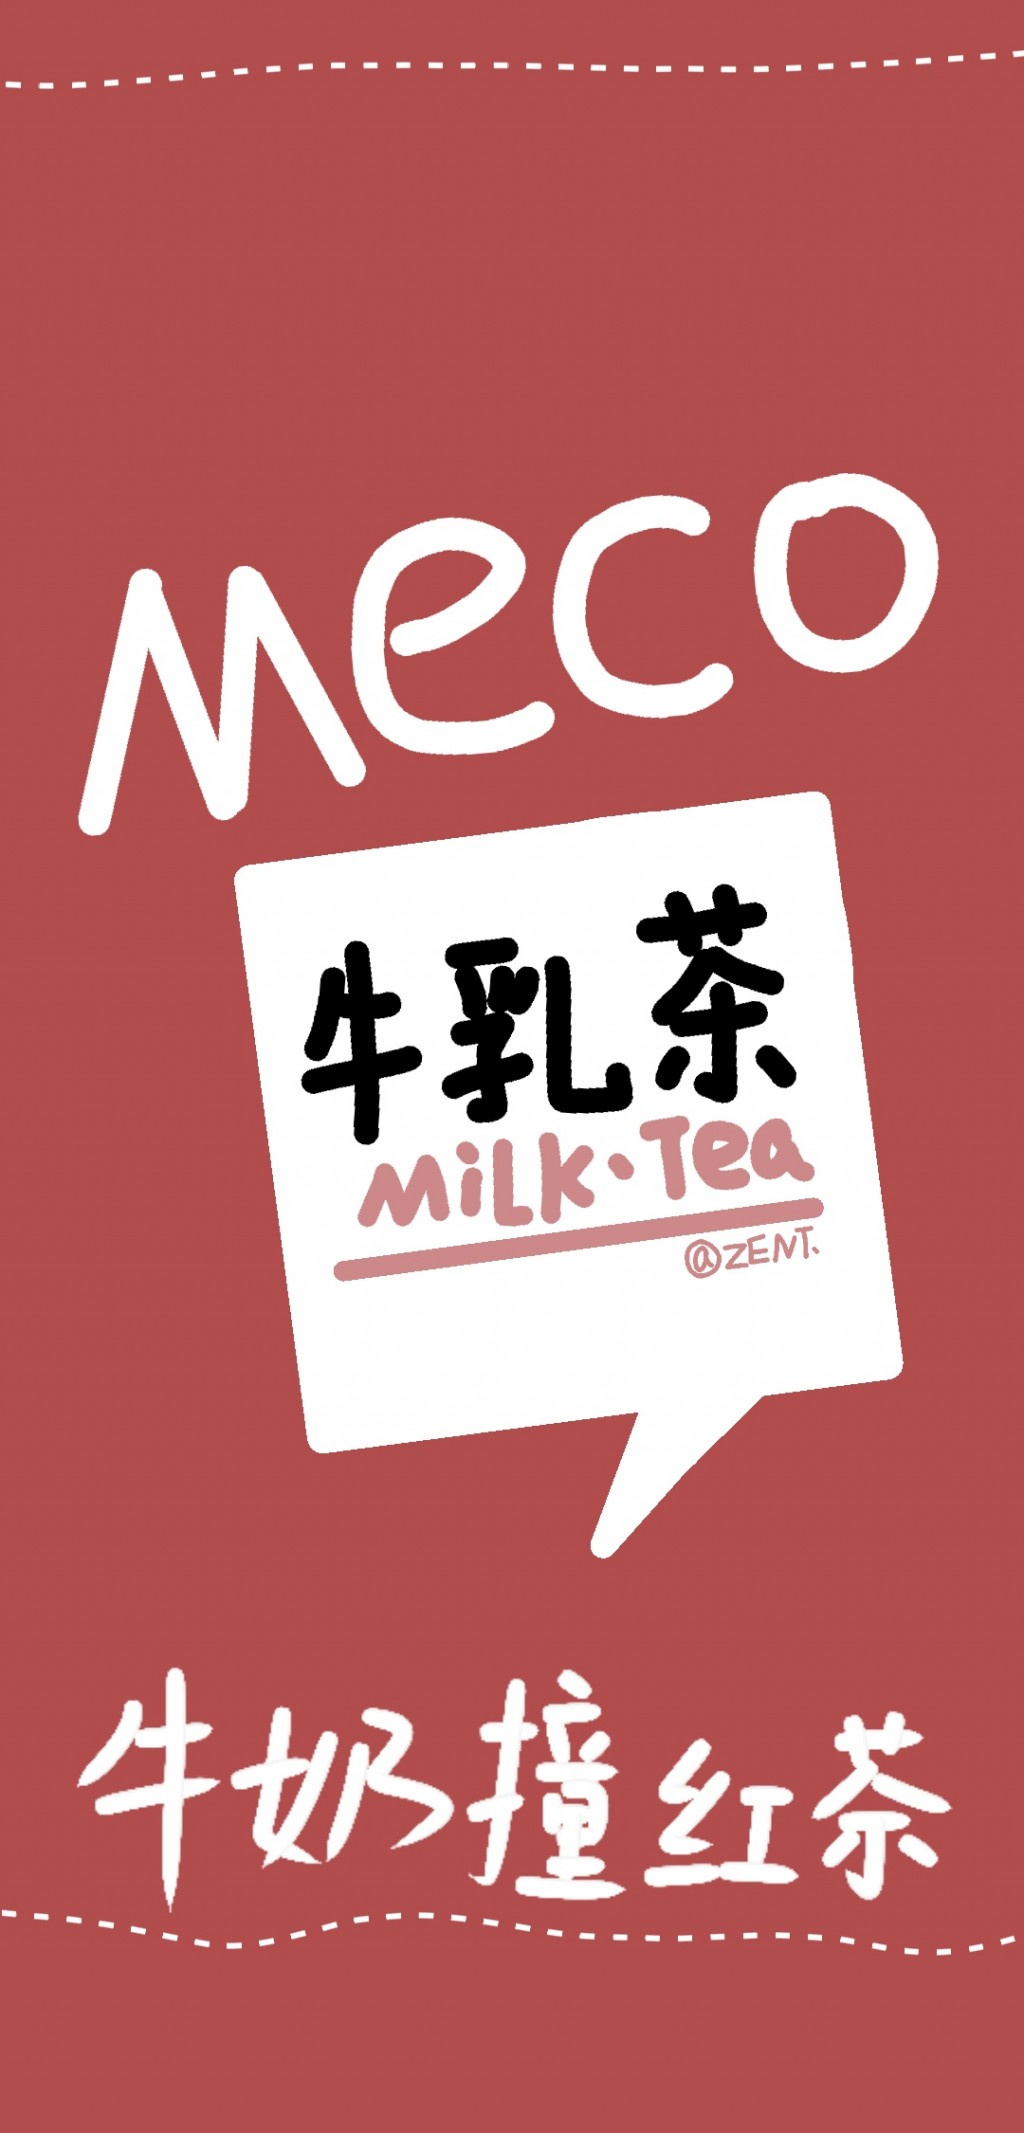 网红奶茶可爱系列插画手机壁纸